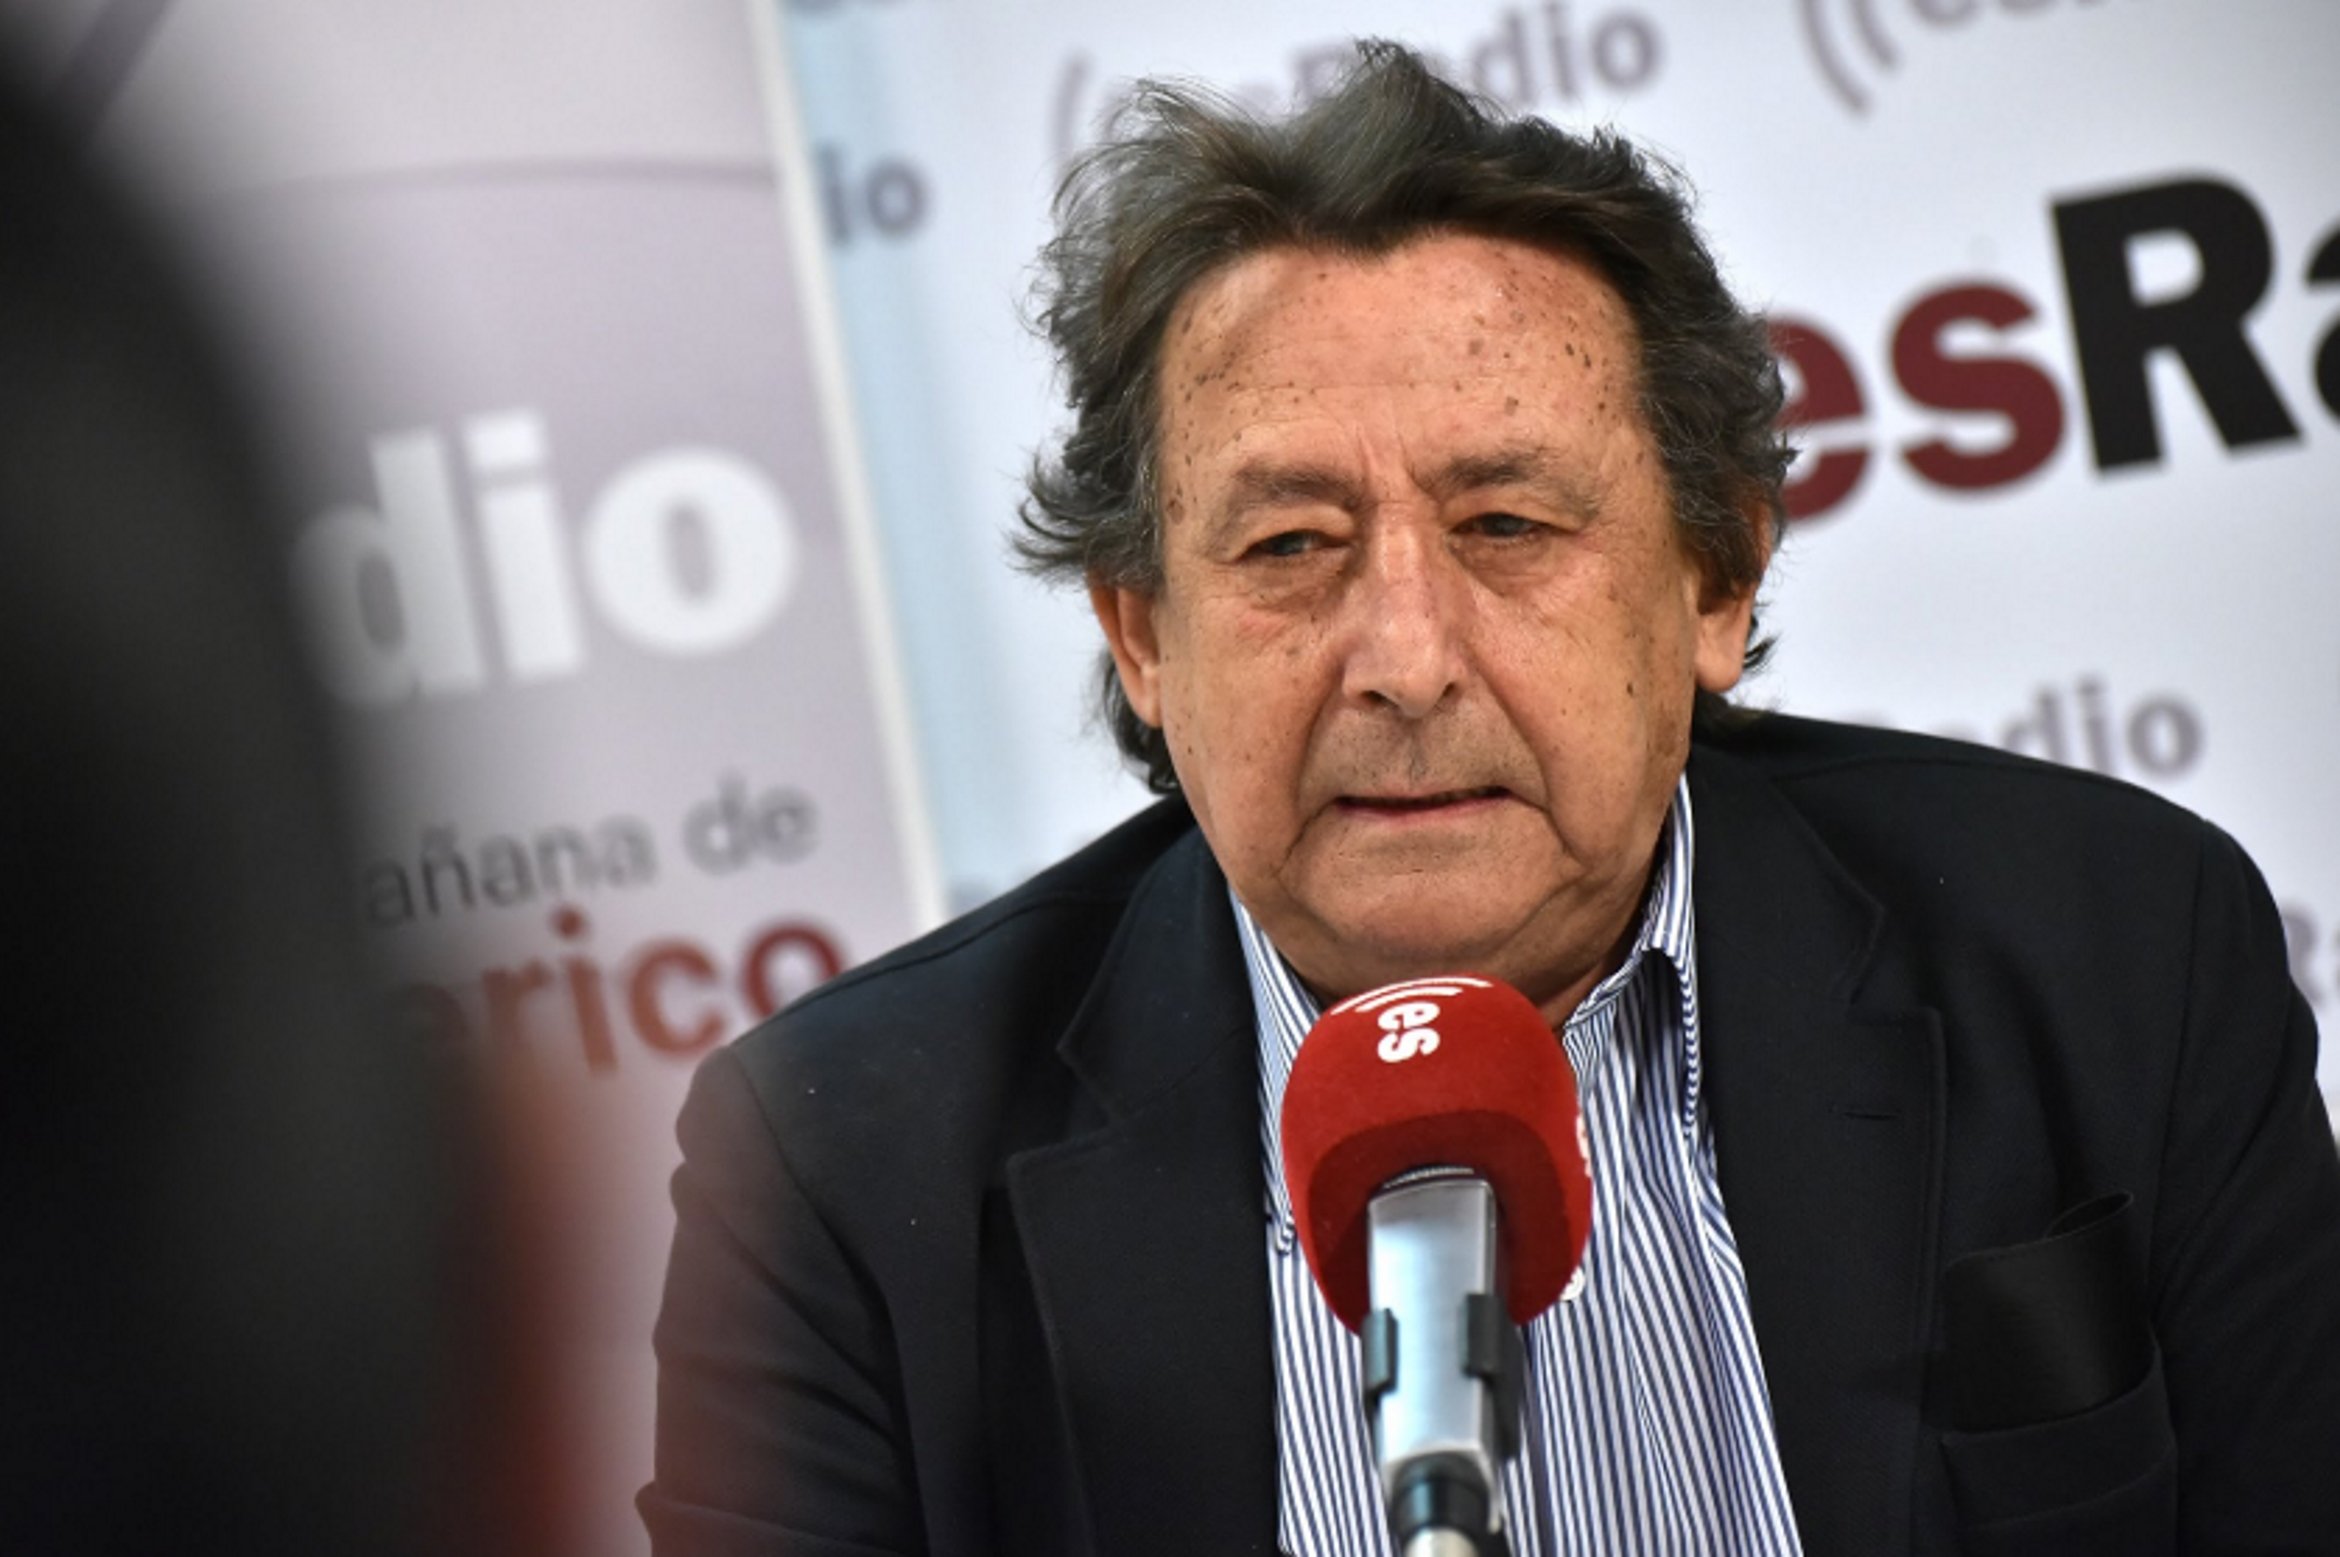 Ira de Alfonso Ussía (La Razón) contra la "revuelta" del PP vasco: "Mamarracho"